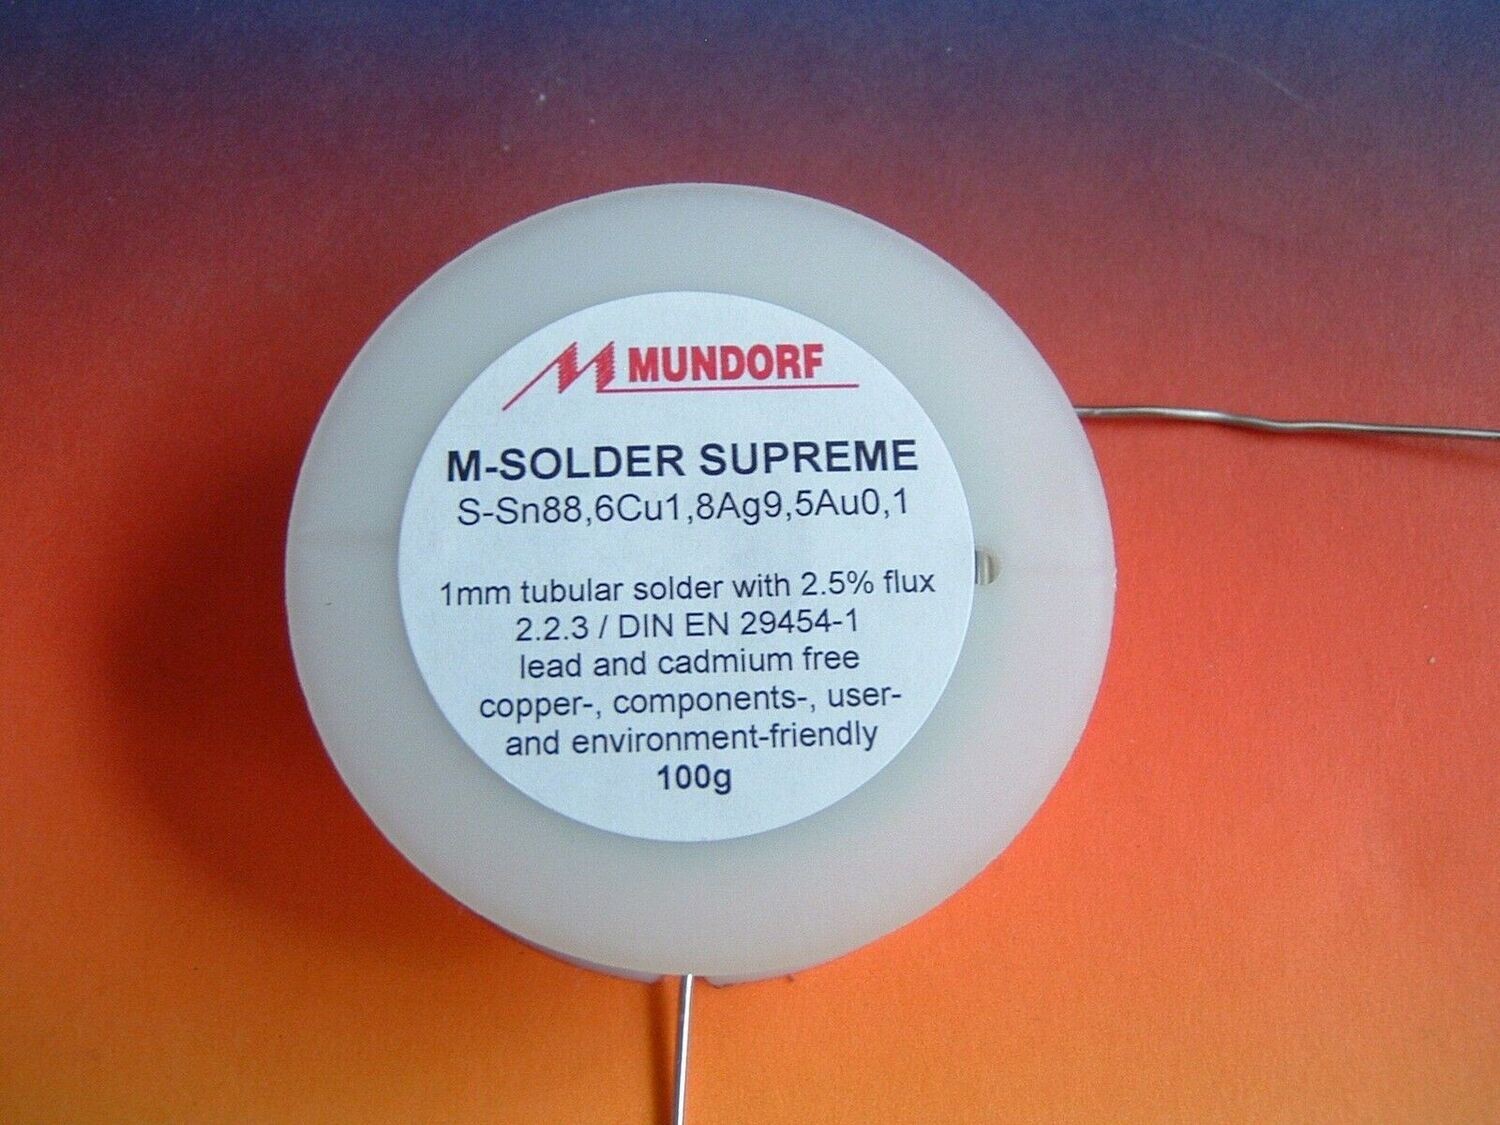 Mundorf MSolder Supreme 100gr